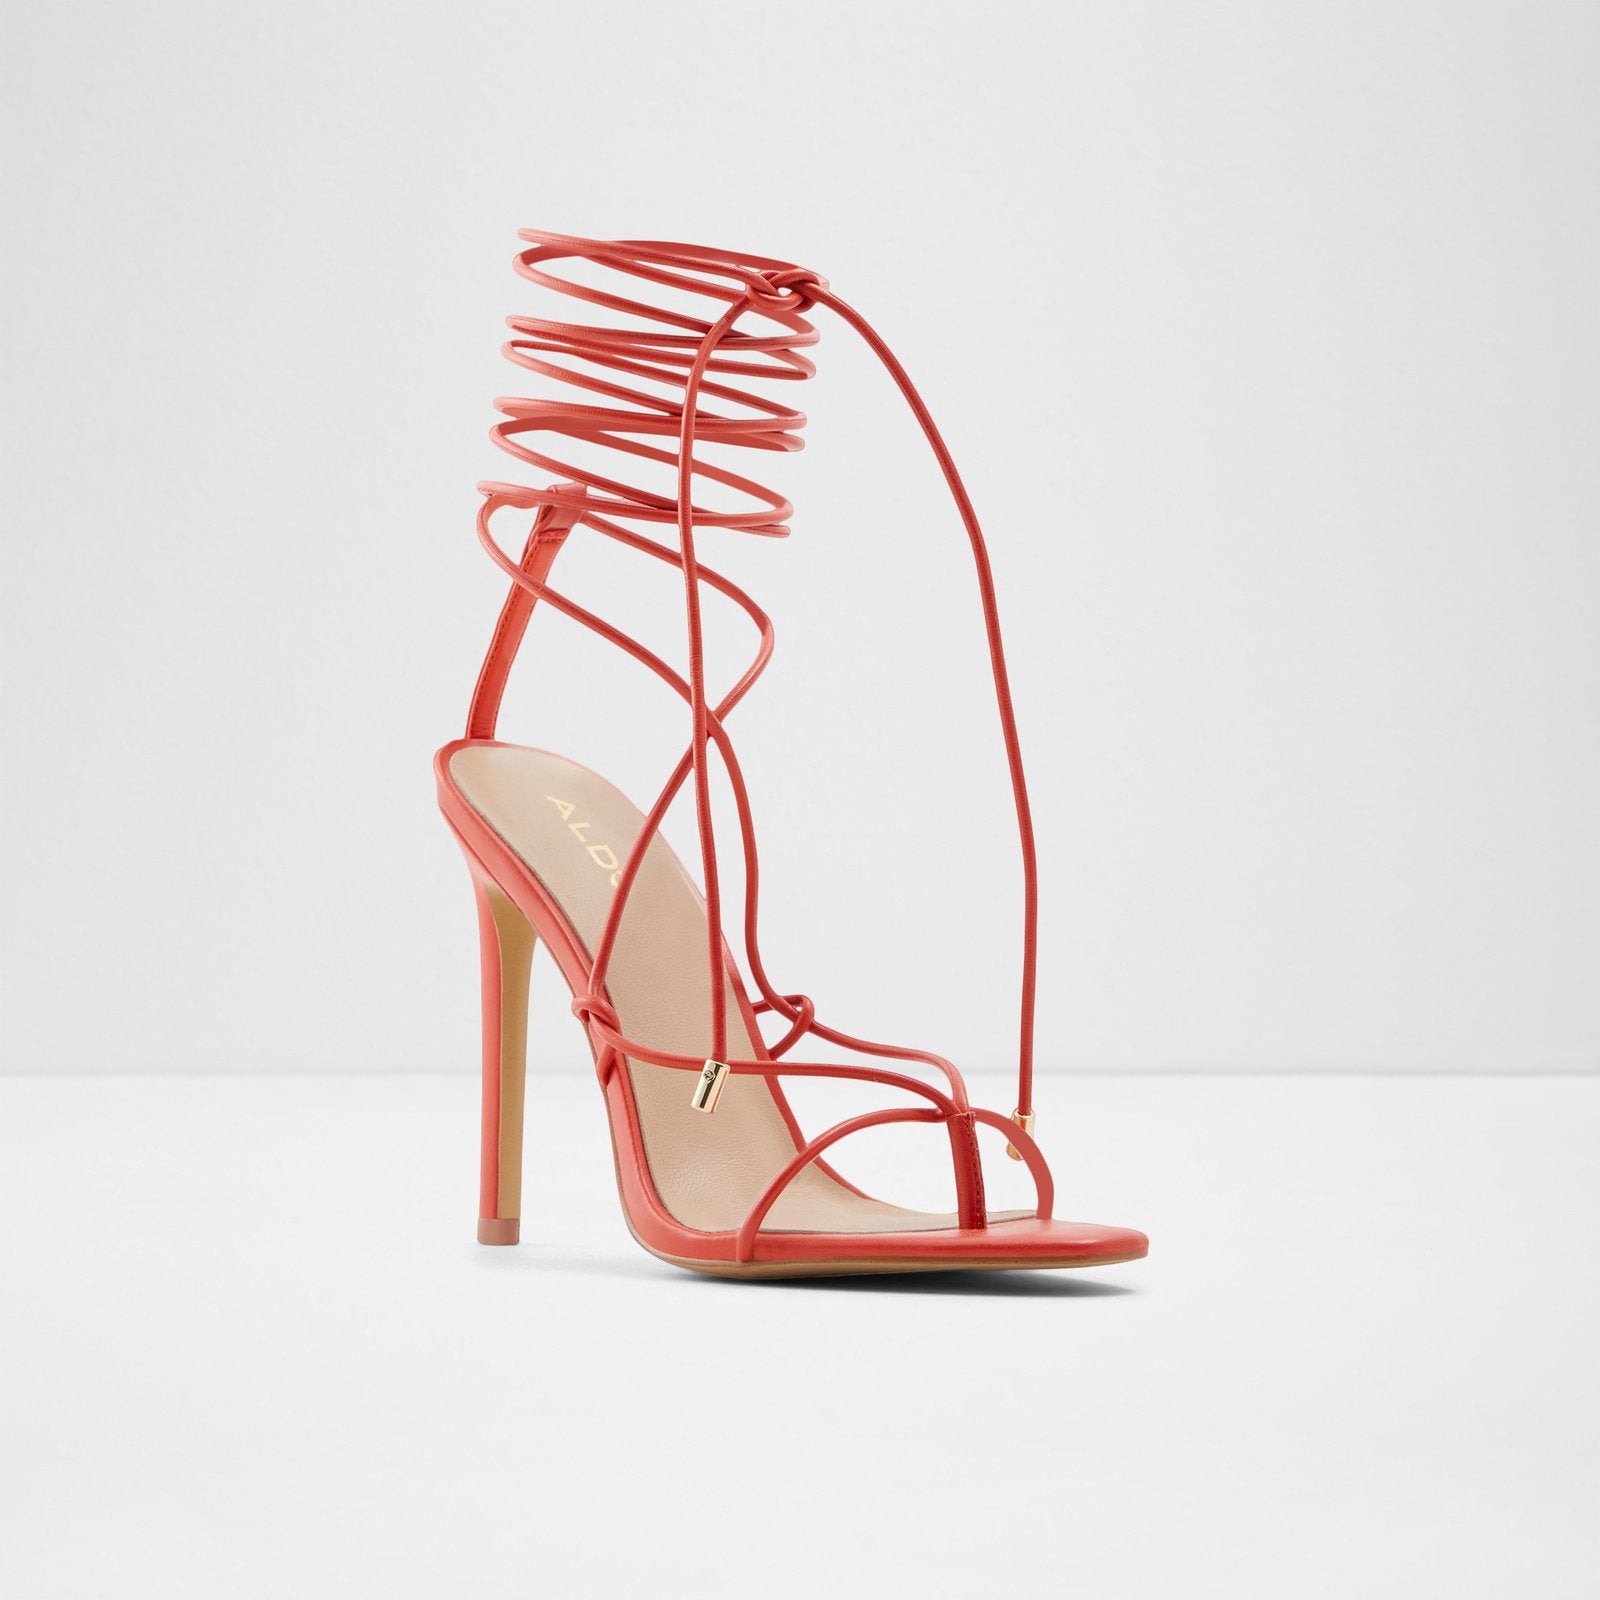 Glaosa / Heeled Sandals Women Shoes - Orange - ALDO KSA